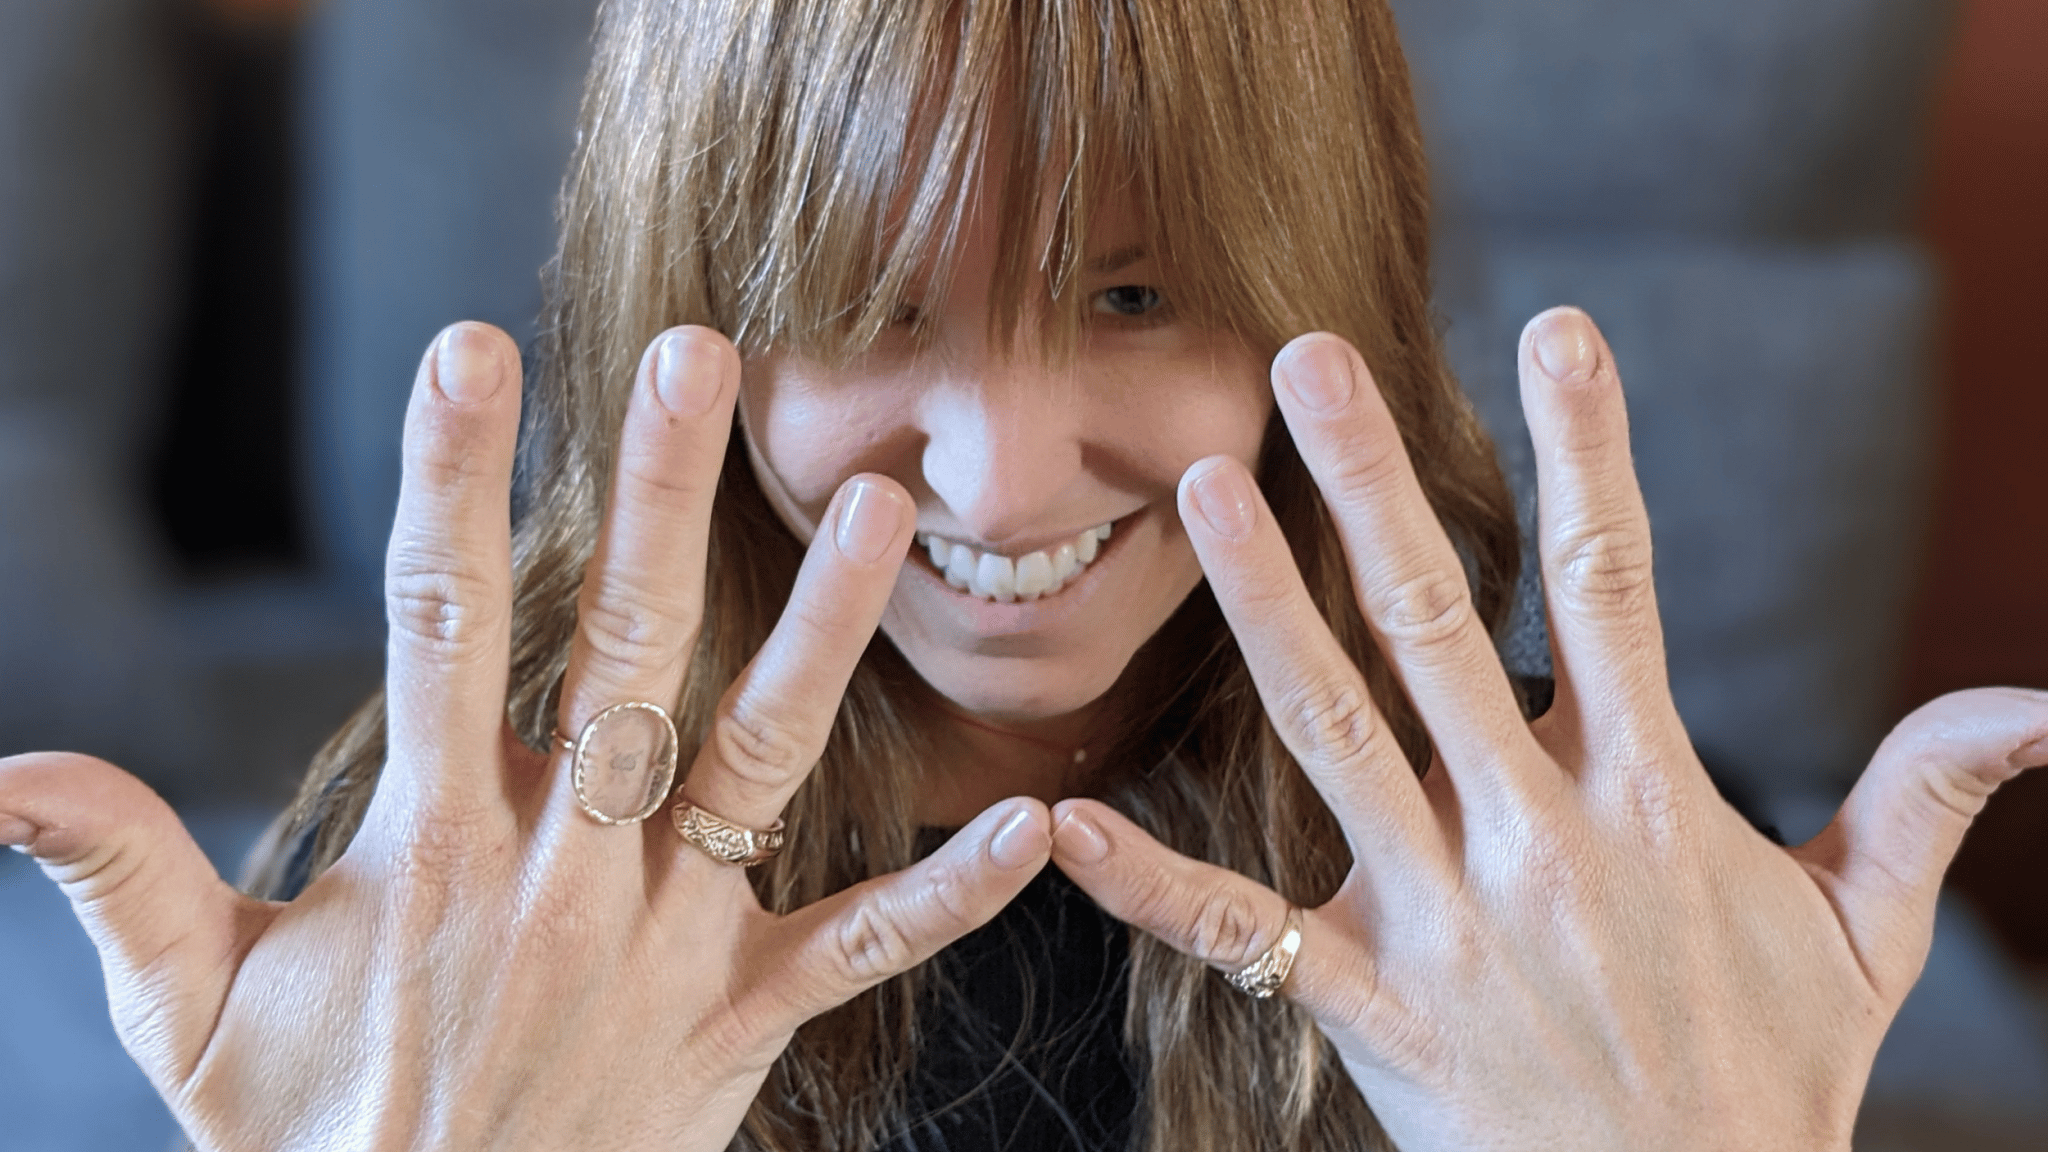 Les mudras : le yoga des doigts avec Juliette Dumas – Partie 3